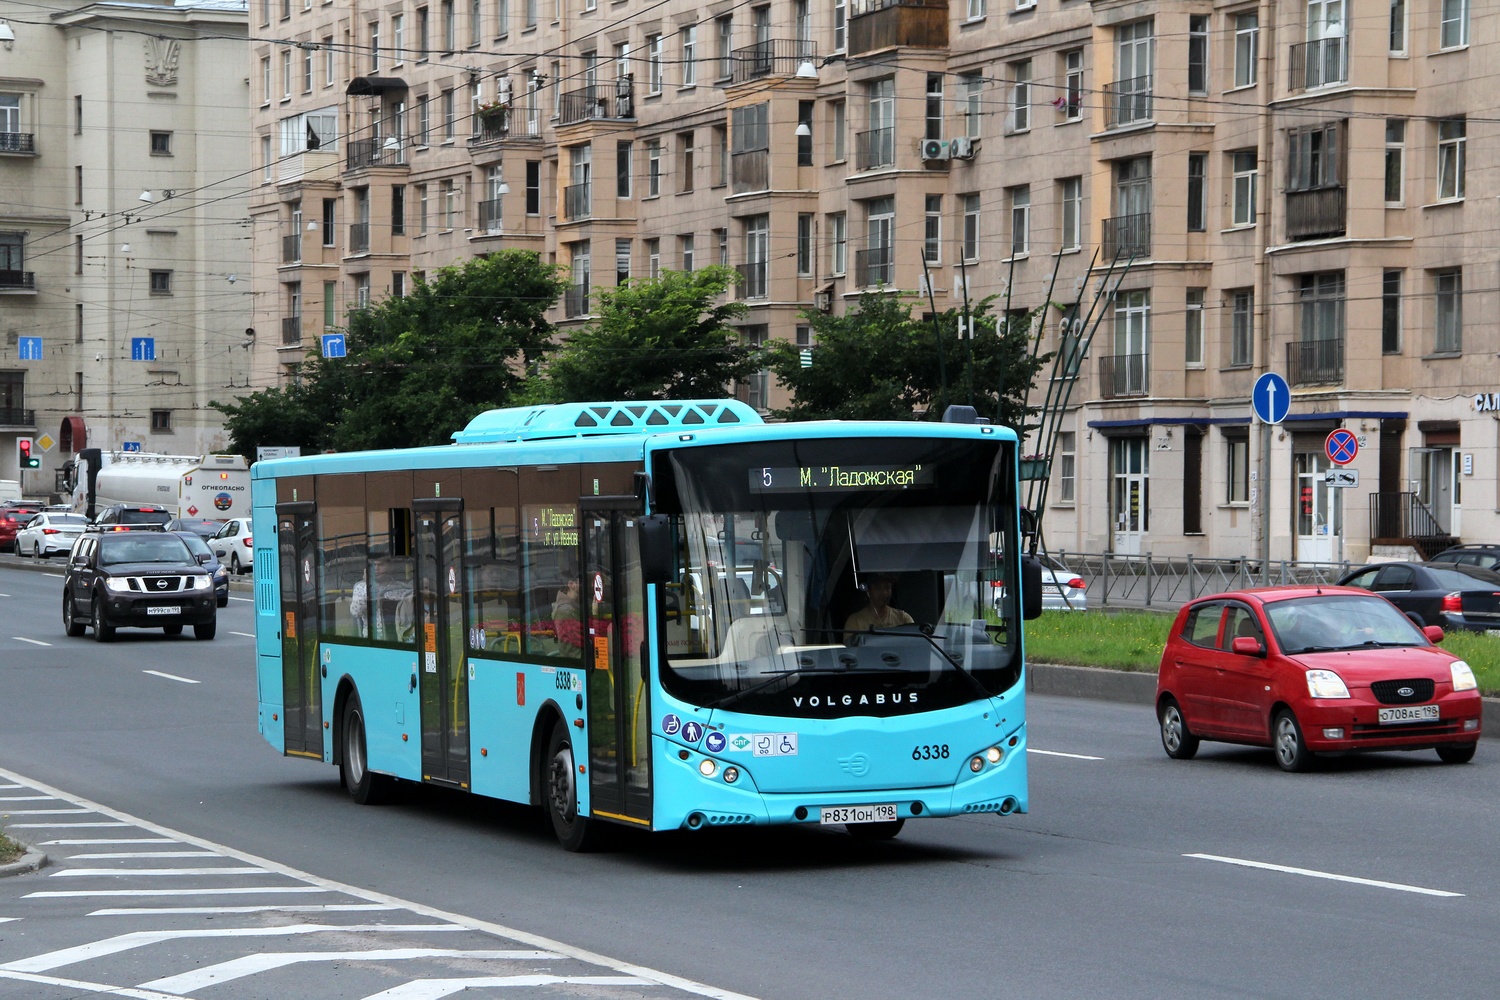 Sanktpēterburga, Volgabus-5270.G2 (LNG) № 6338